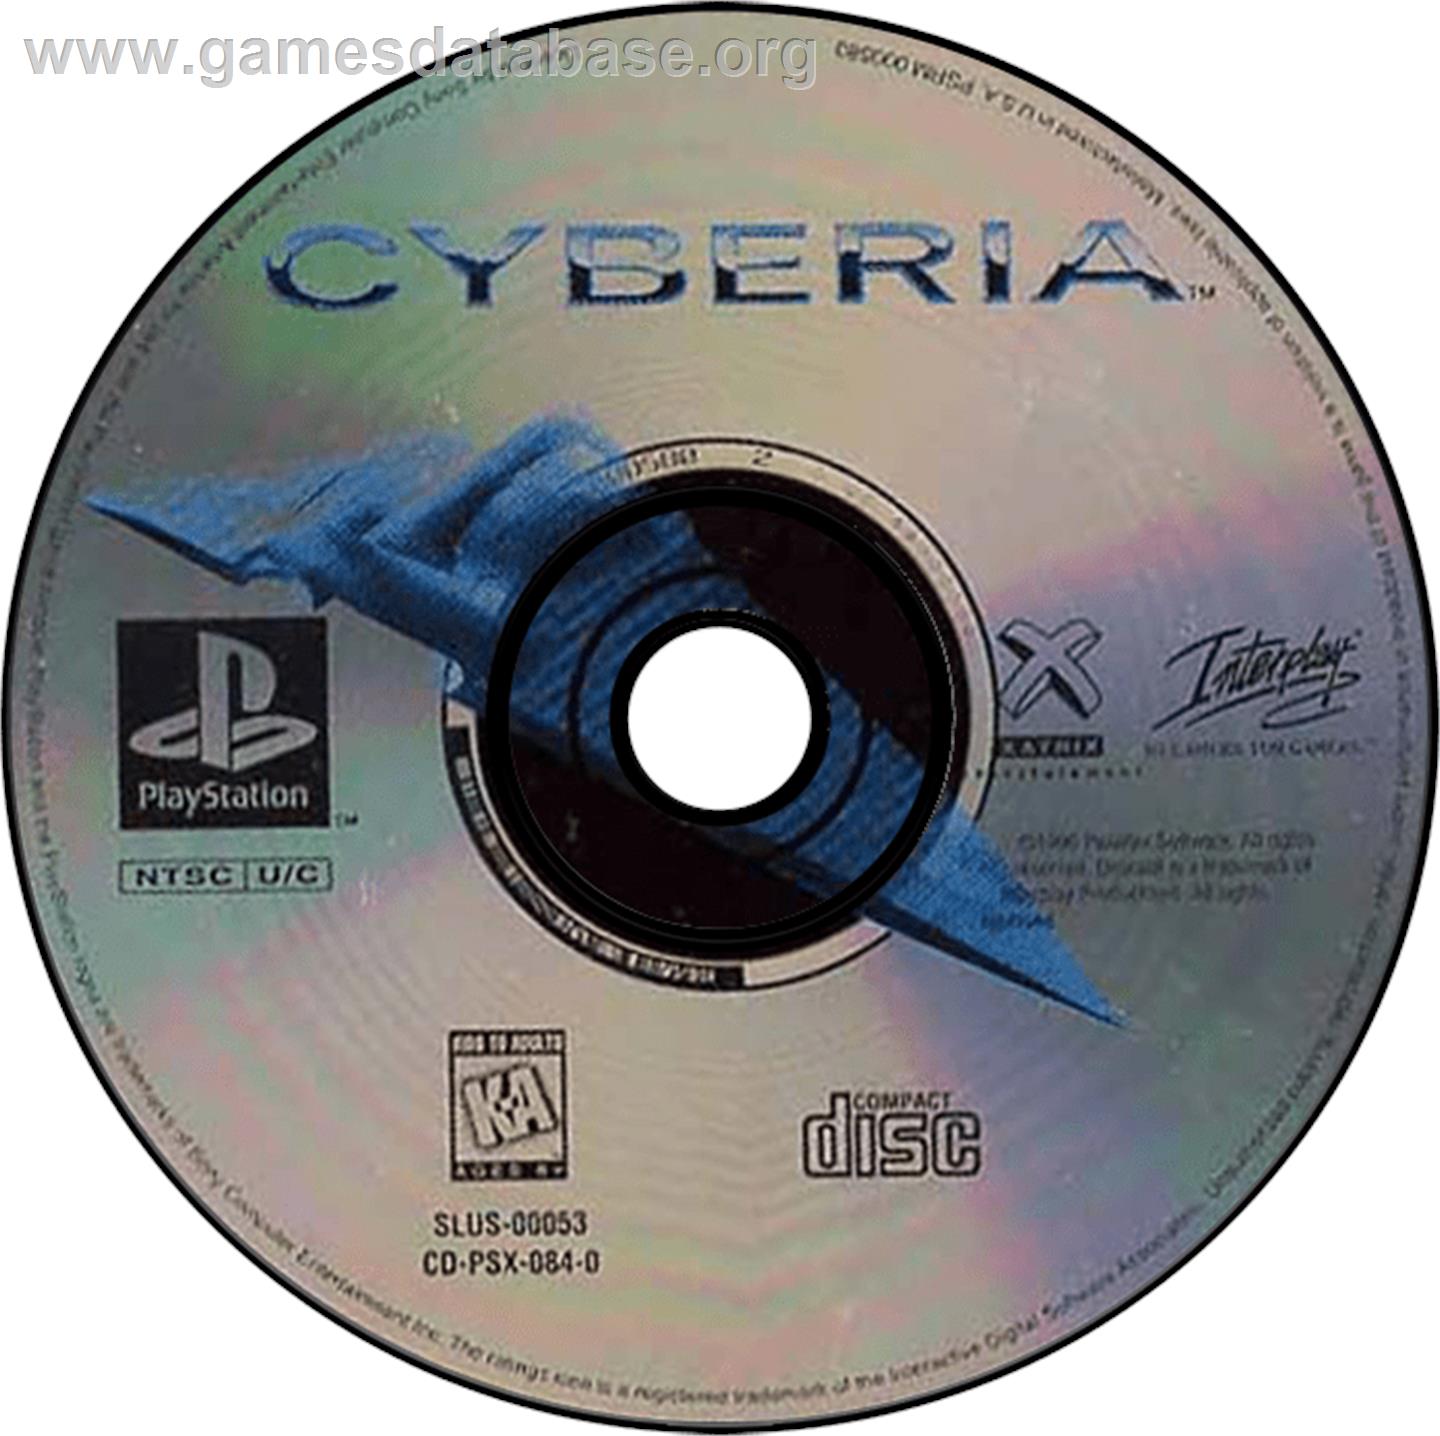 Cyberia - Sony Playstation - Artwork - Disc